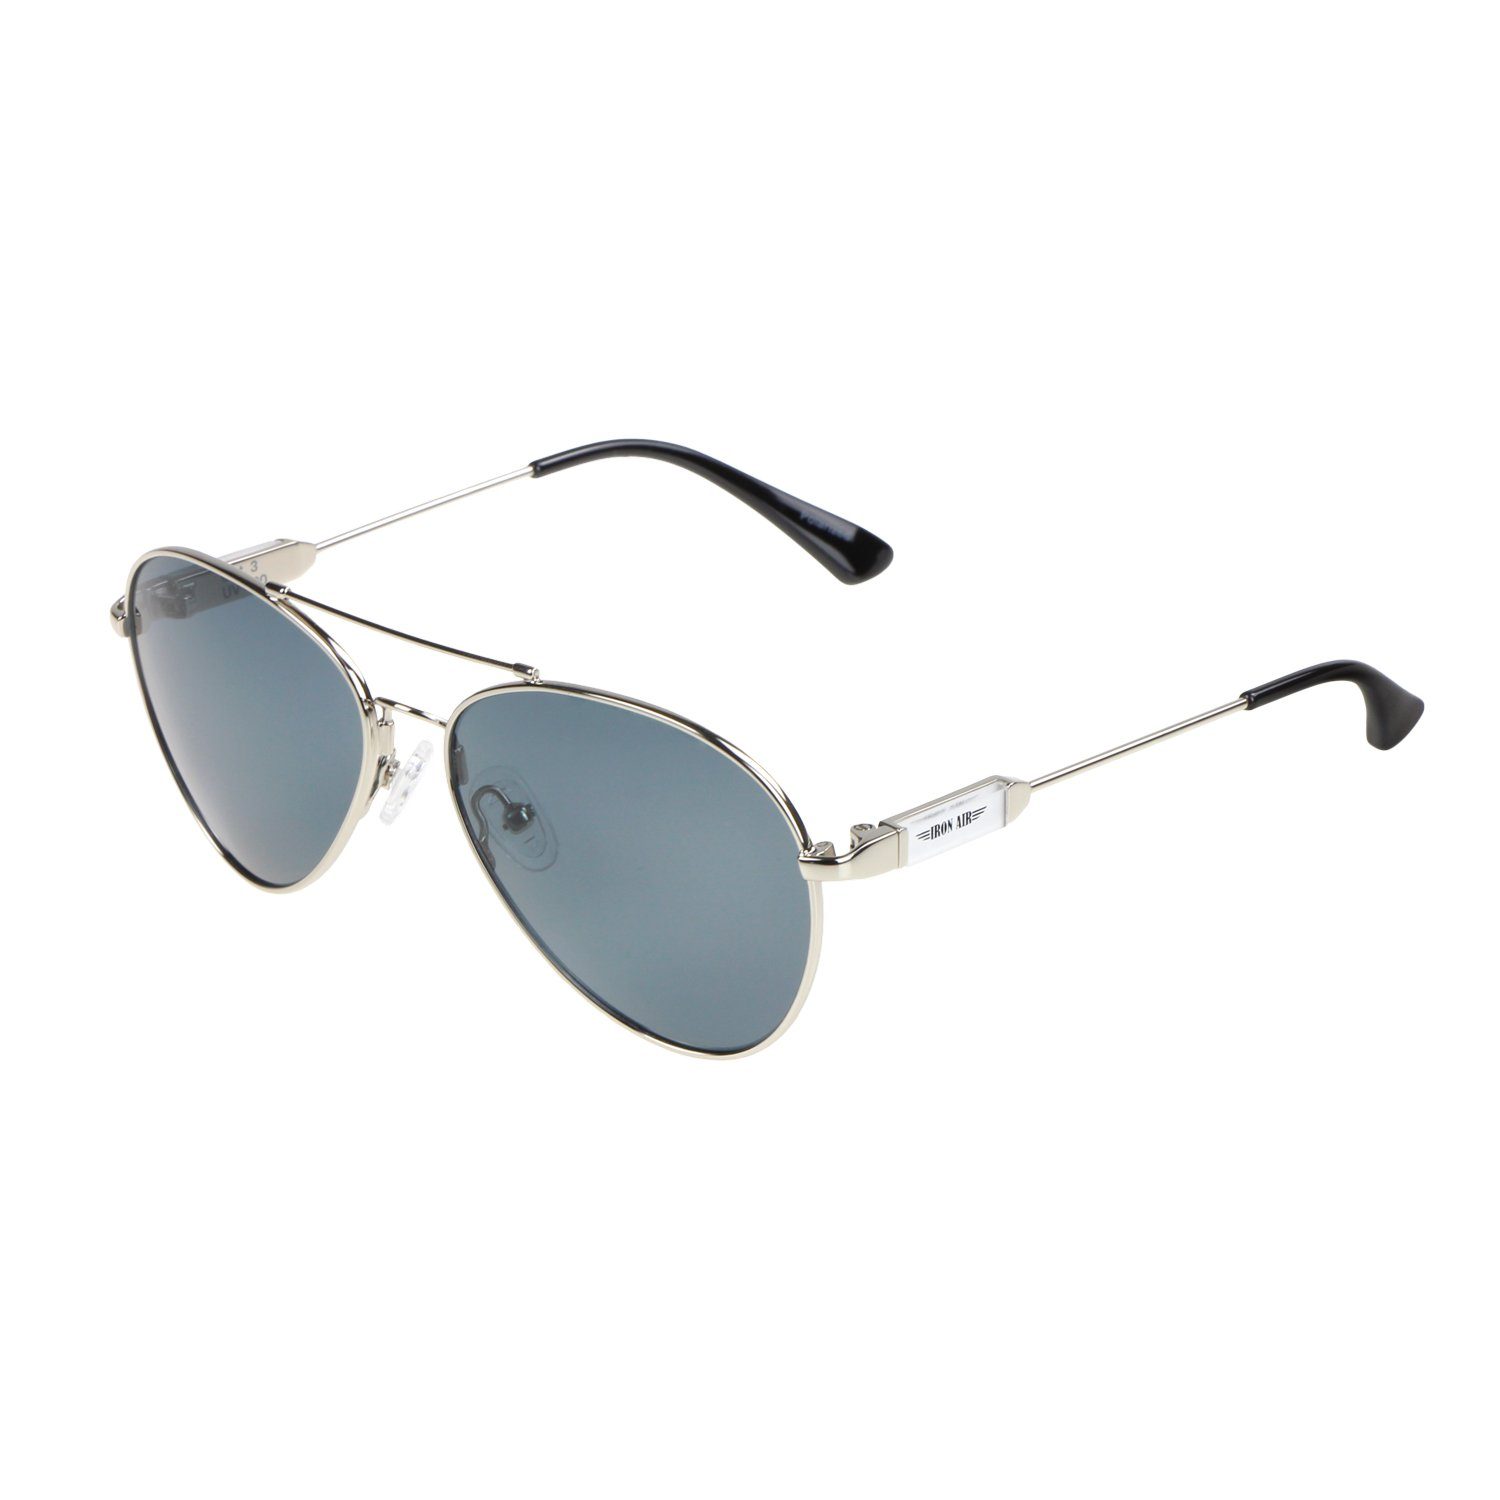 ActiveSol SUNGLASSES Sonnenbrille Pilotenbrille für Kinder, 6 - 10 Jahre, Flieger-Brille (inklusive Brillenputztuch und Schiebeschachtel) Metall Bügel mit Memory Metall im Nasenbügel Silber - Schwarze Gläser